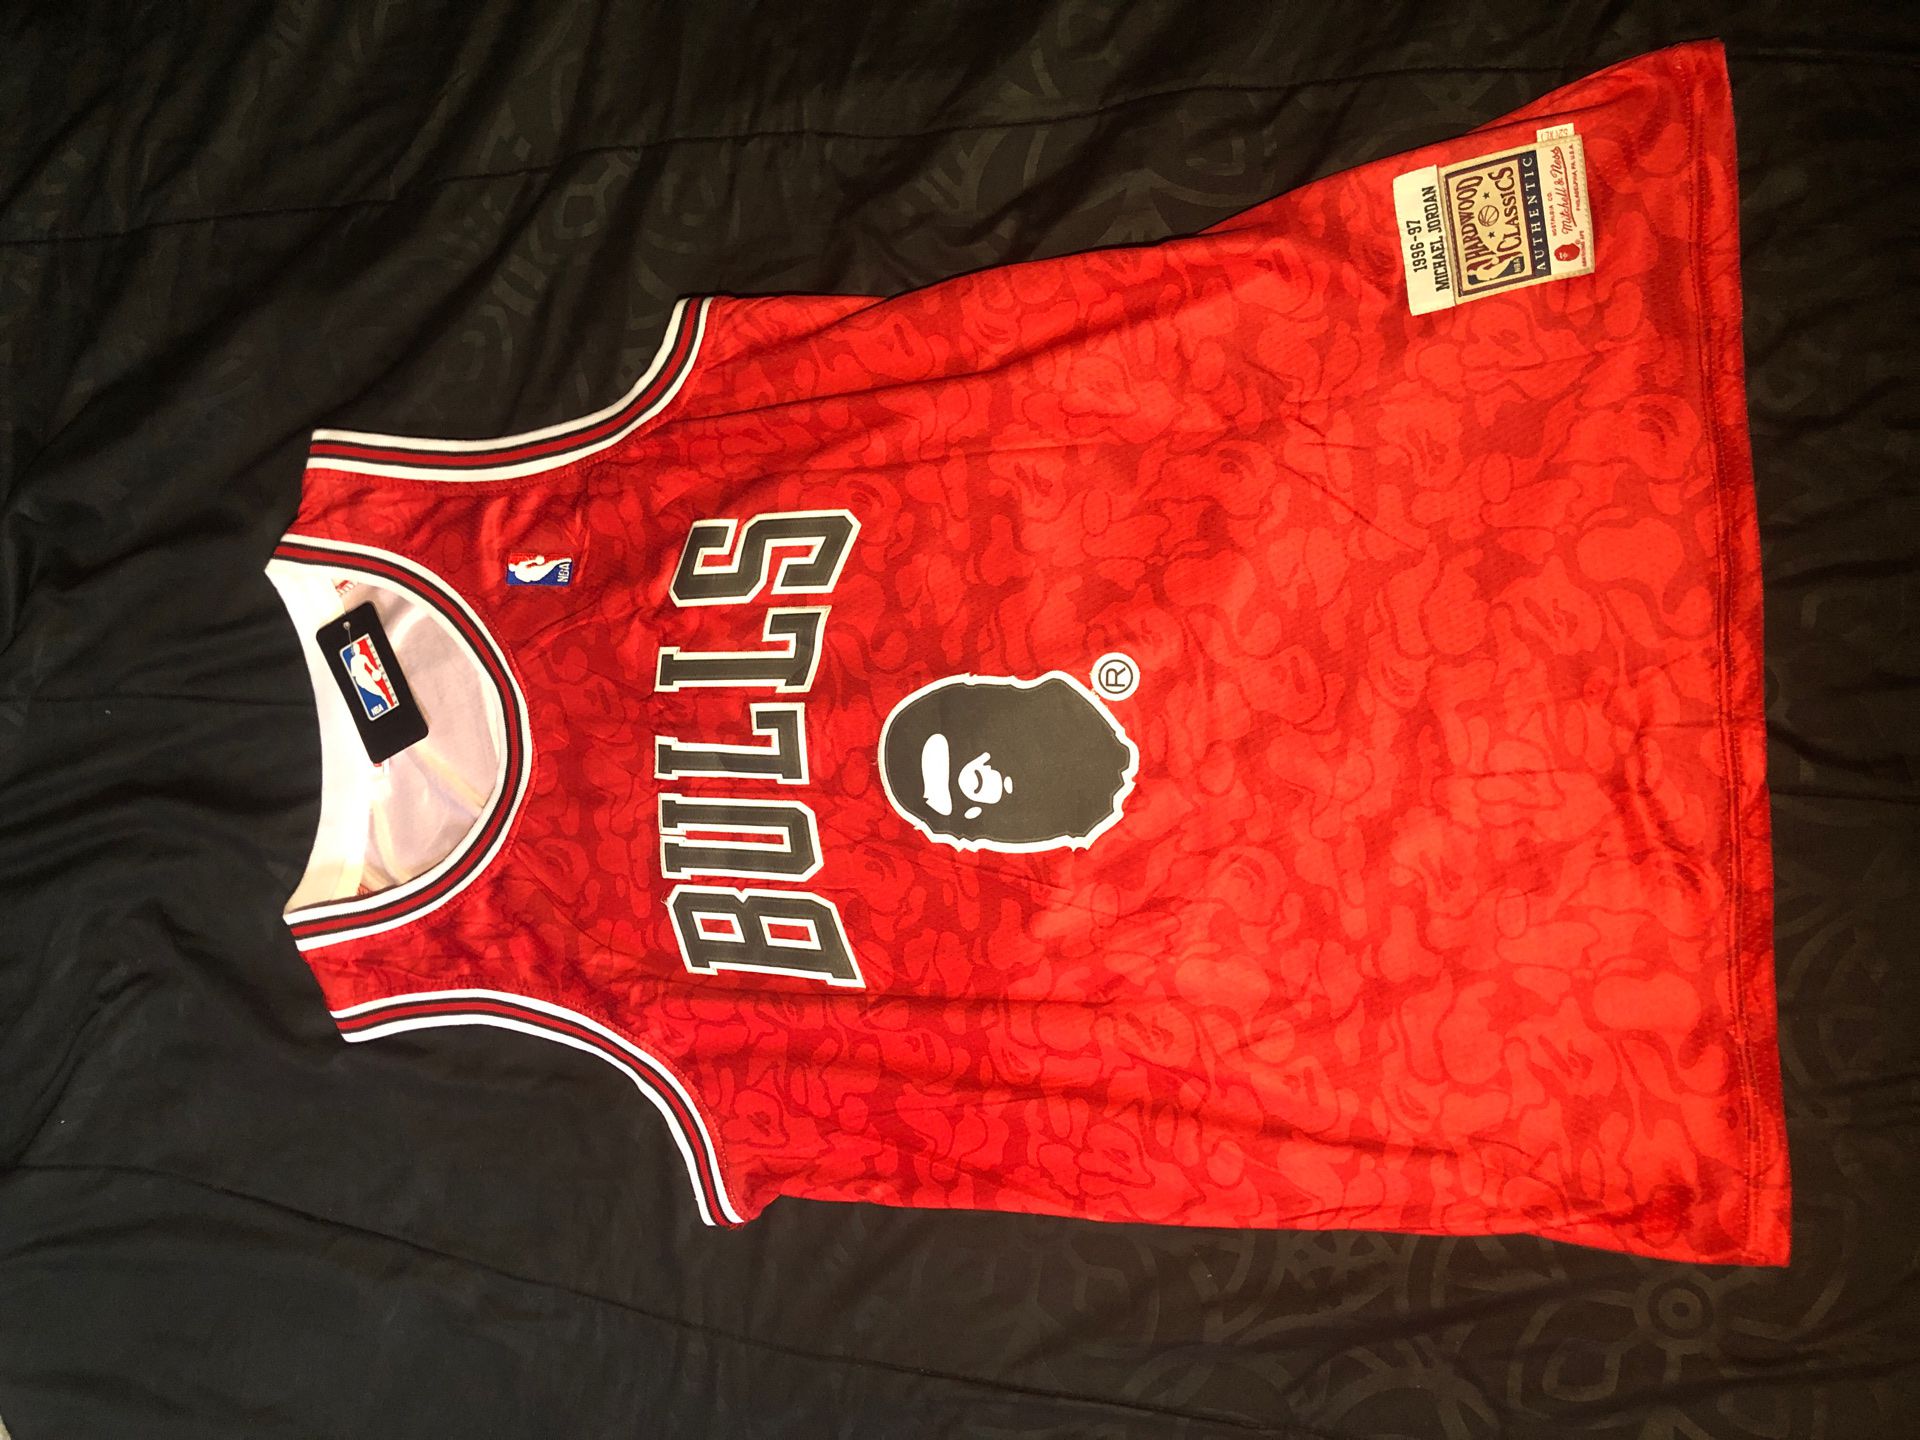 Chicago Bulls x Bape jersey